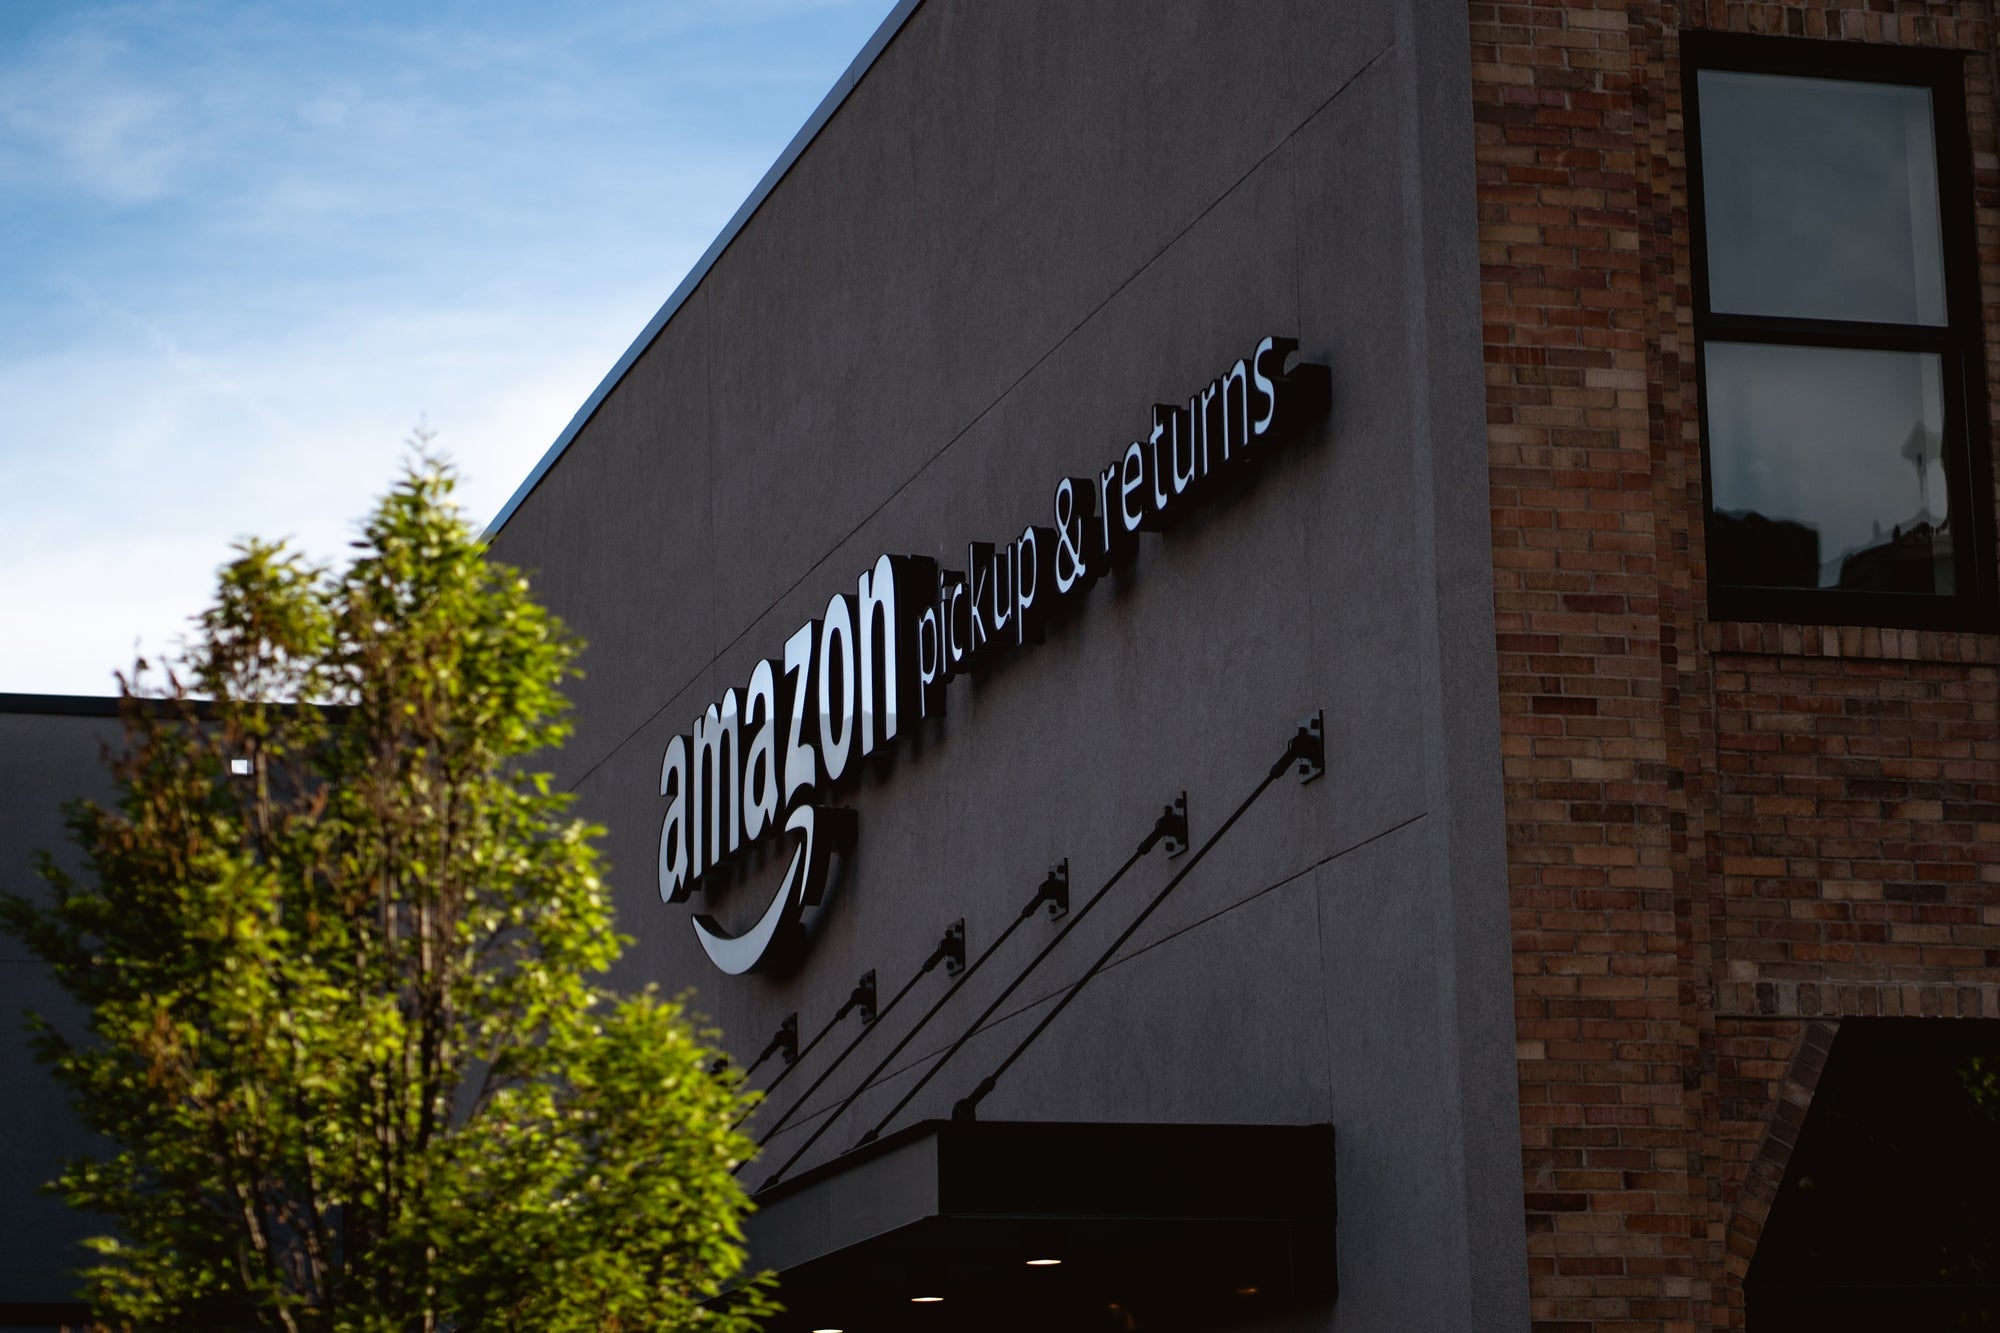 Amazon de Jeff Bezos podría acabar en quiebra por estas razones, según especialista